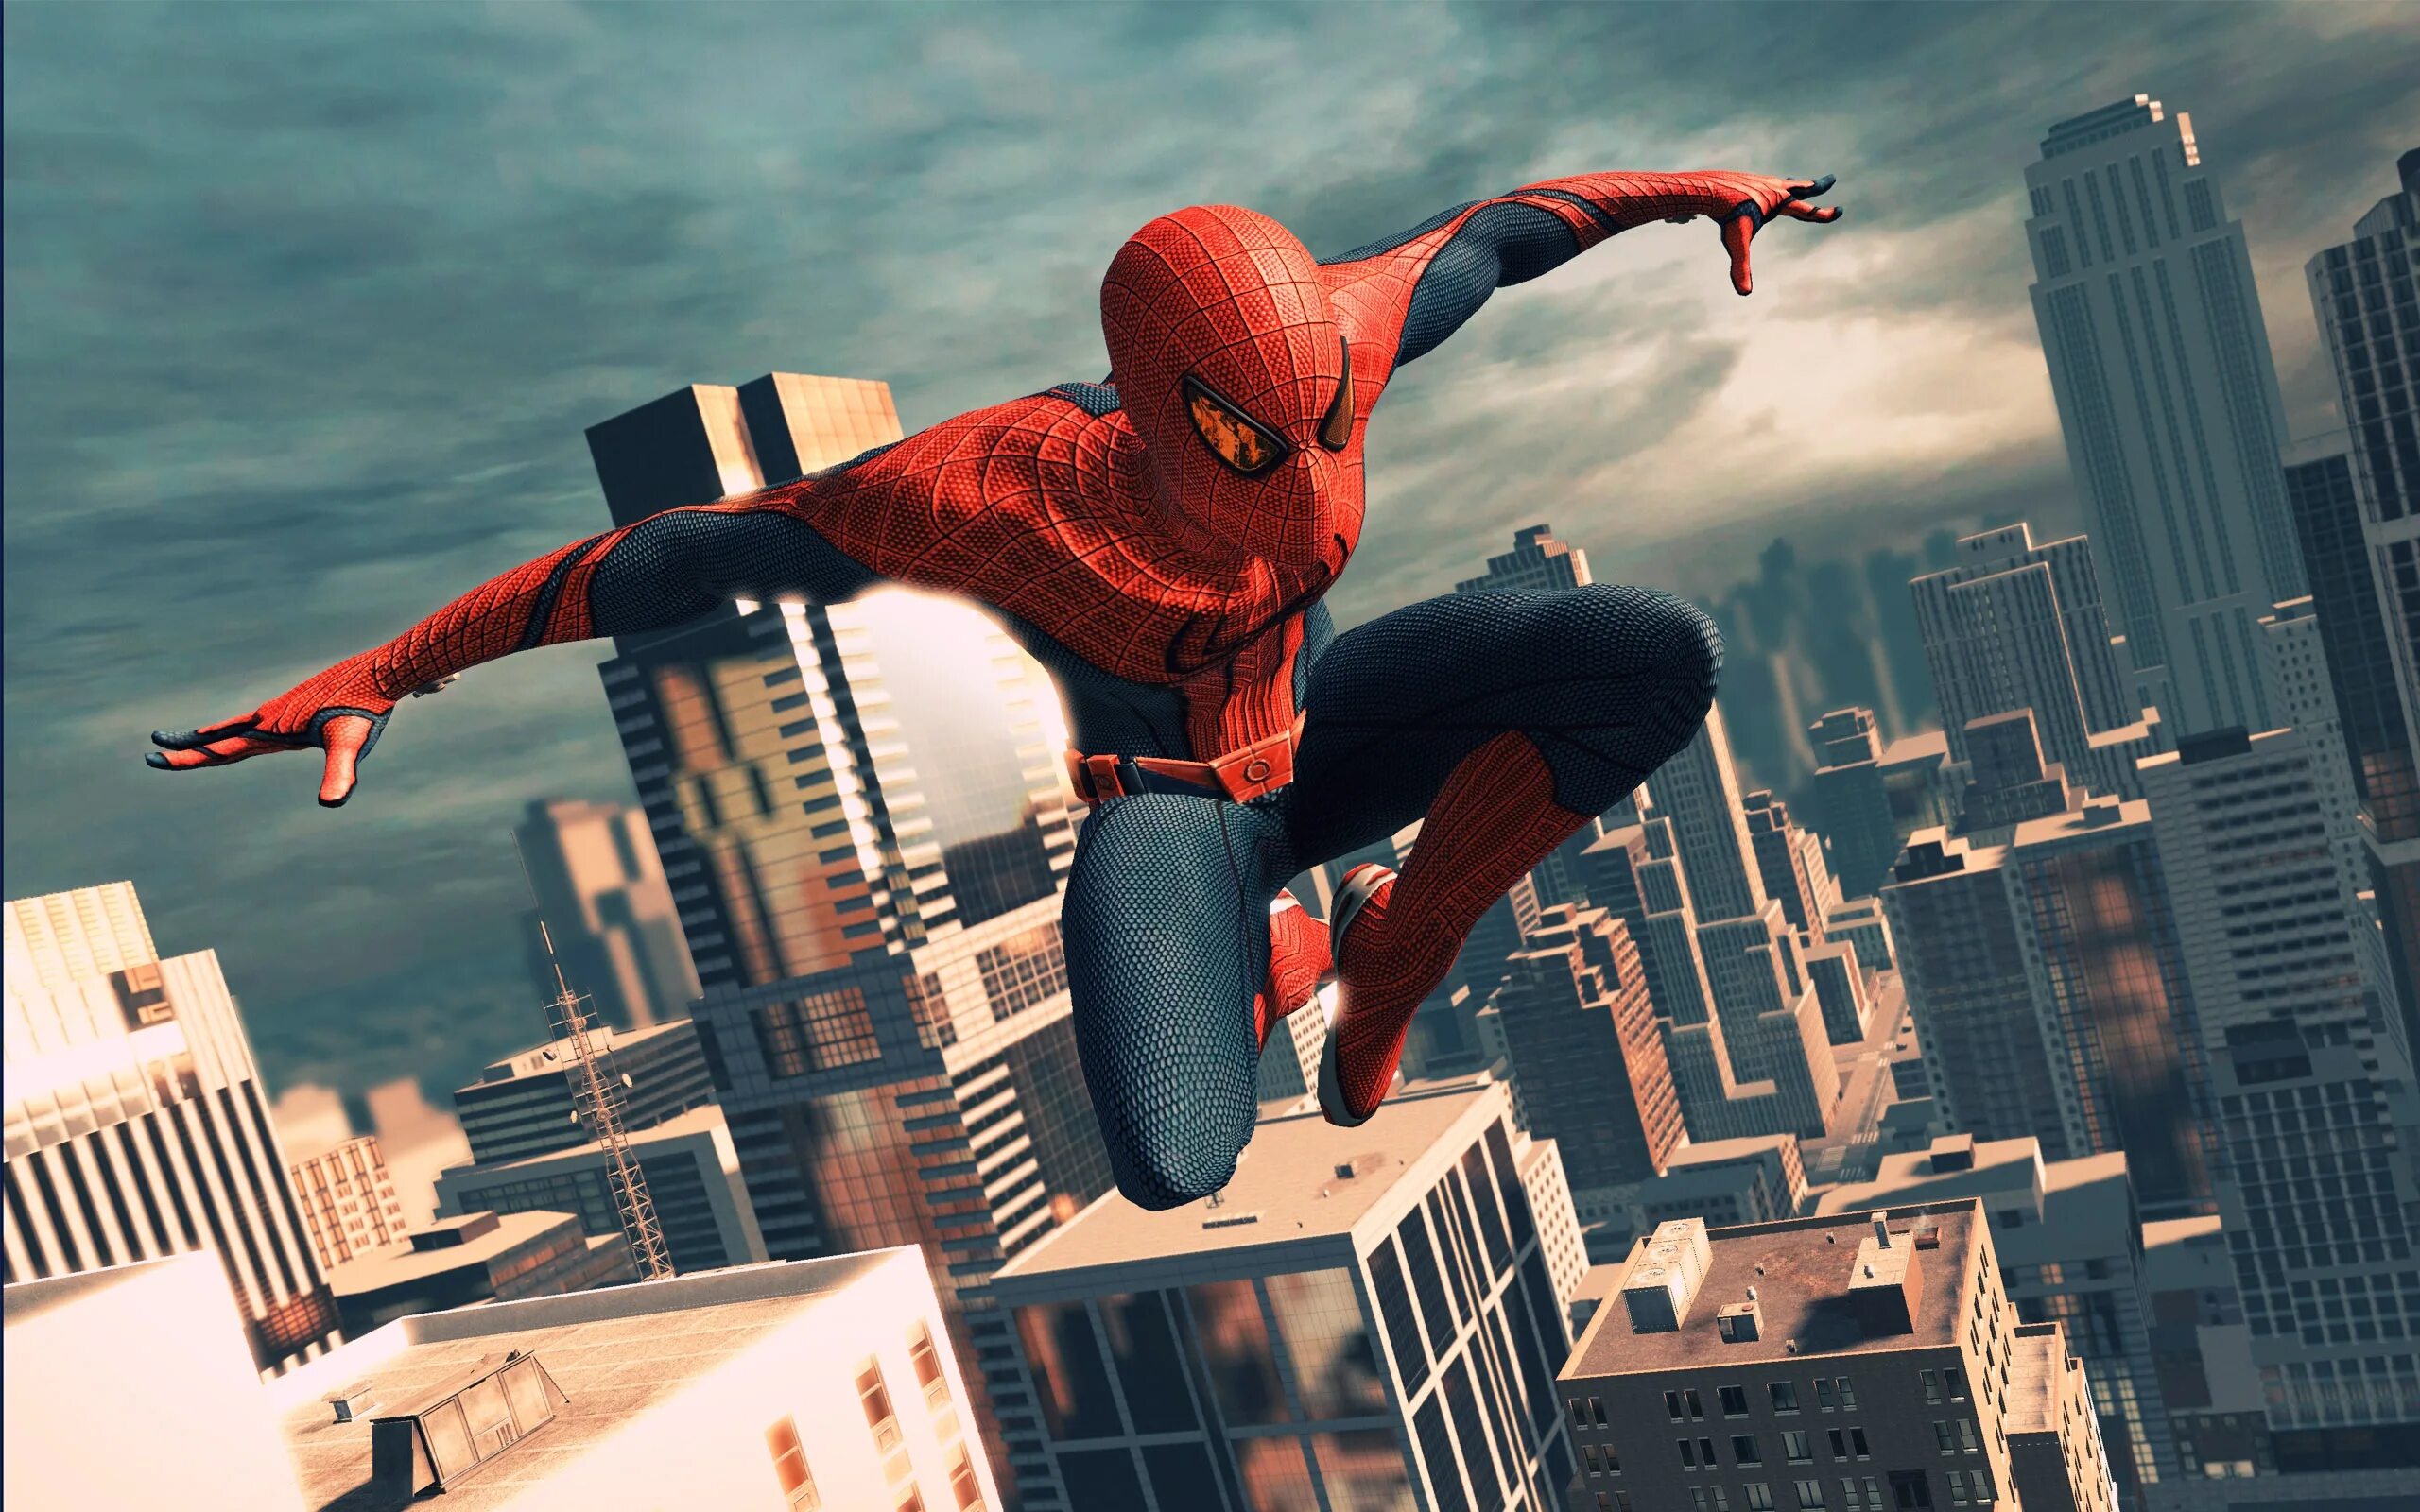 Spiderman. The amazing Spider-man игра. The amazing Spider-man 1 игра. Spider man игра 2015. Человек паук игра 2012.